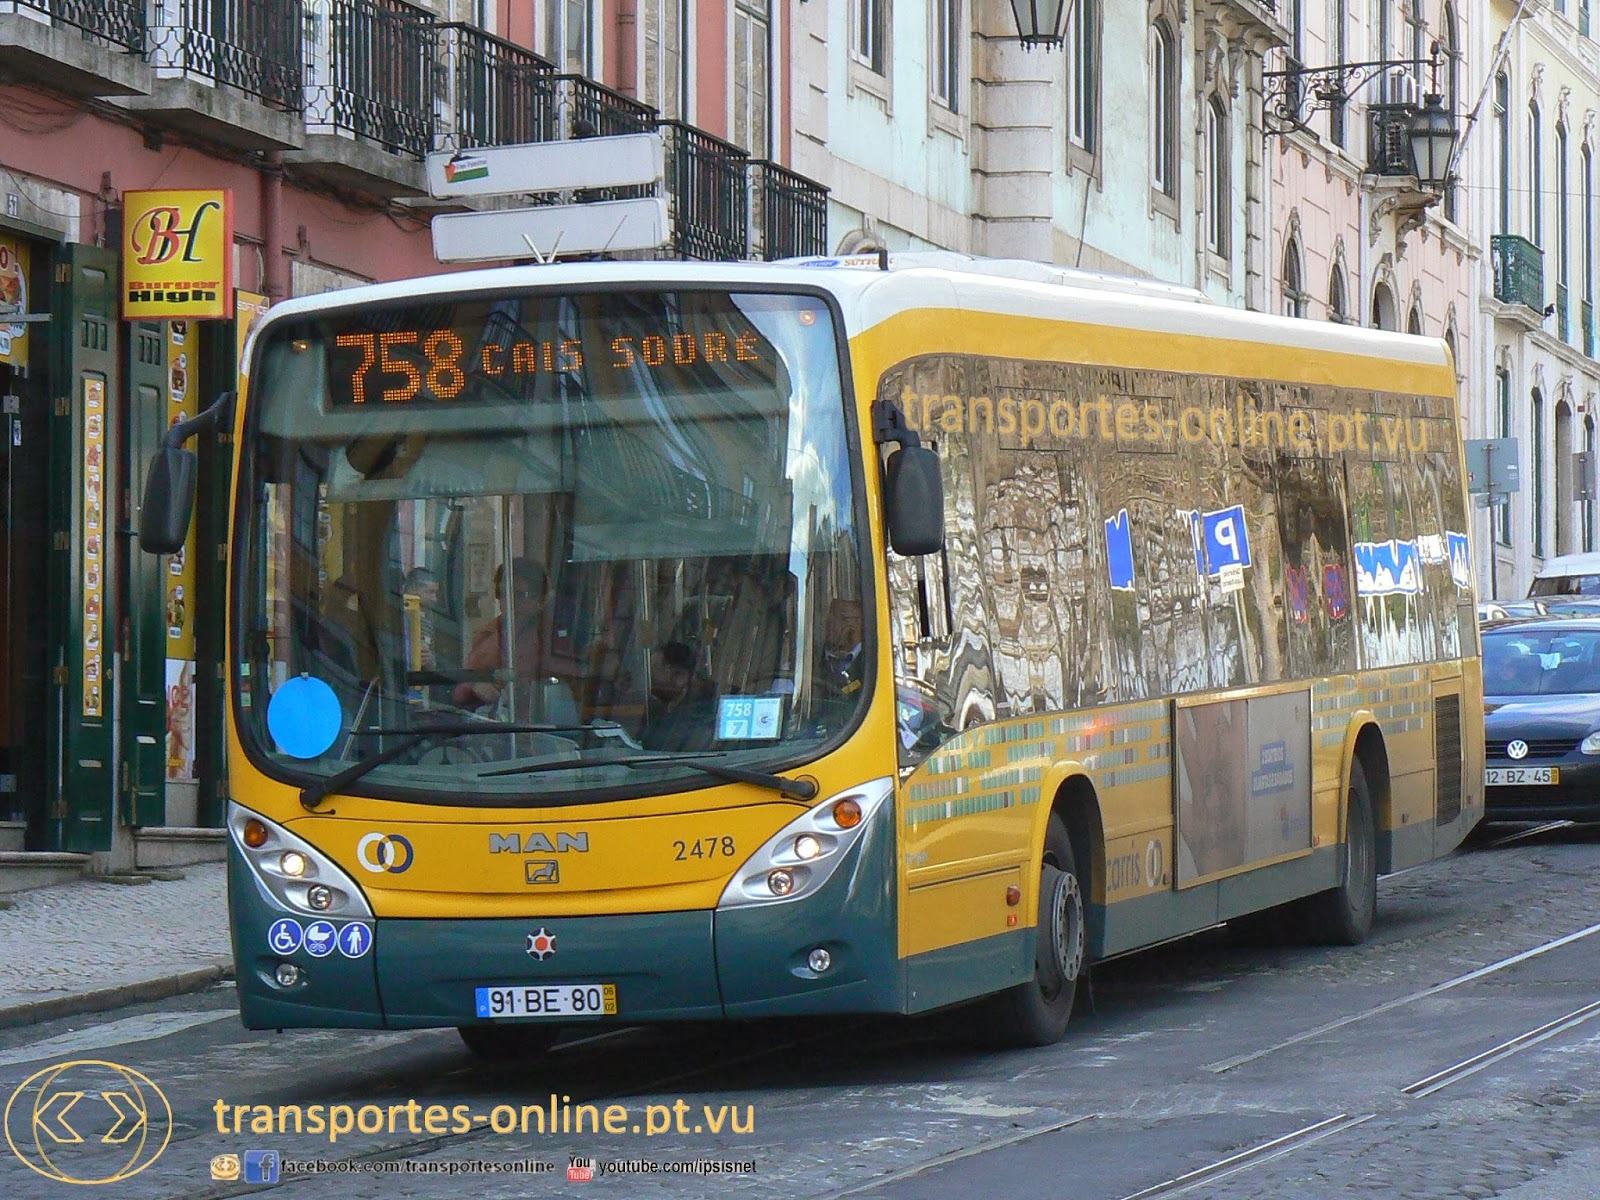 transportes-online.pt.vu